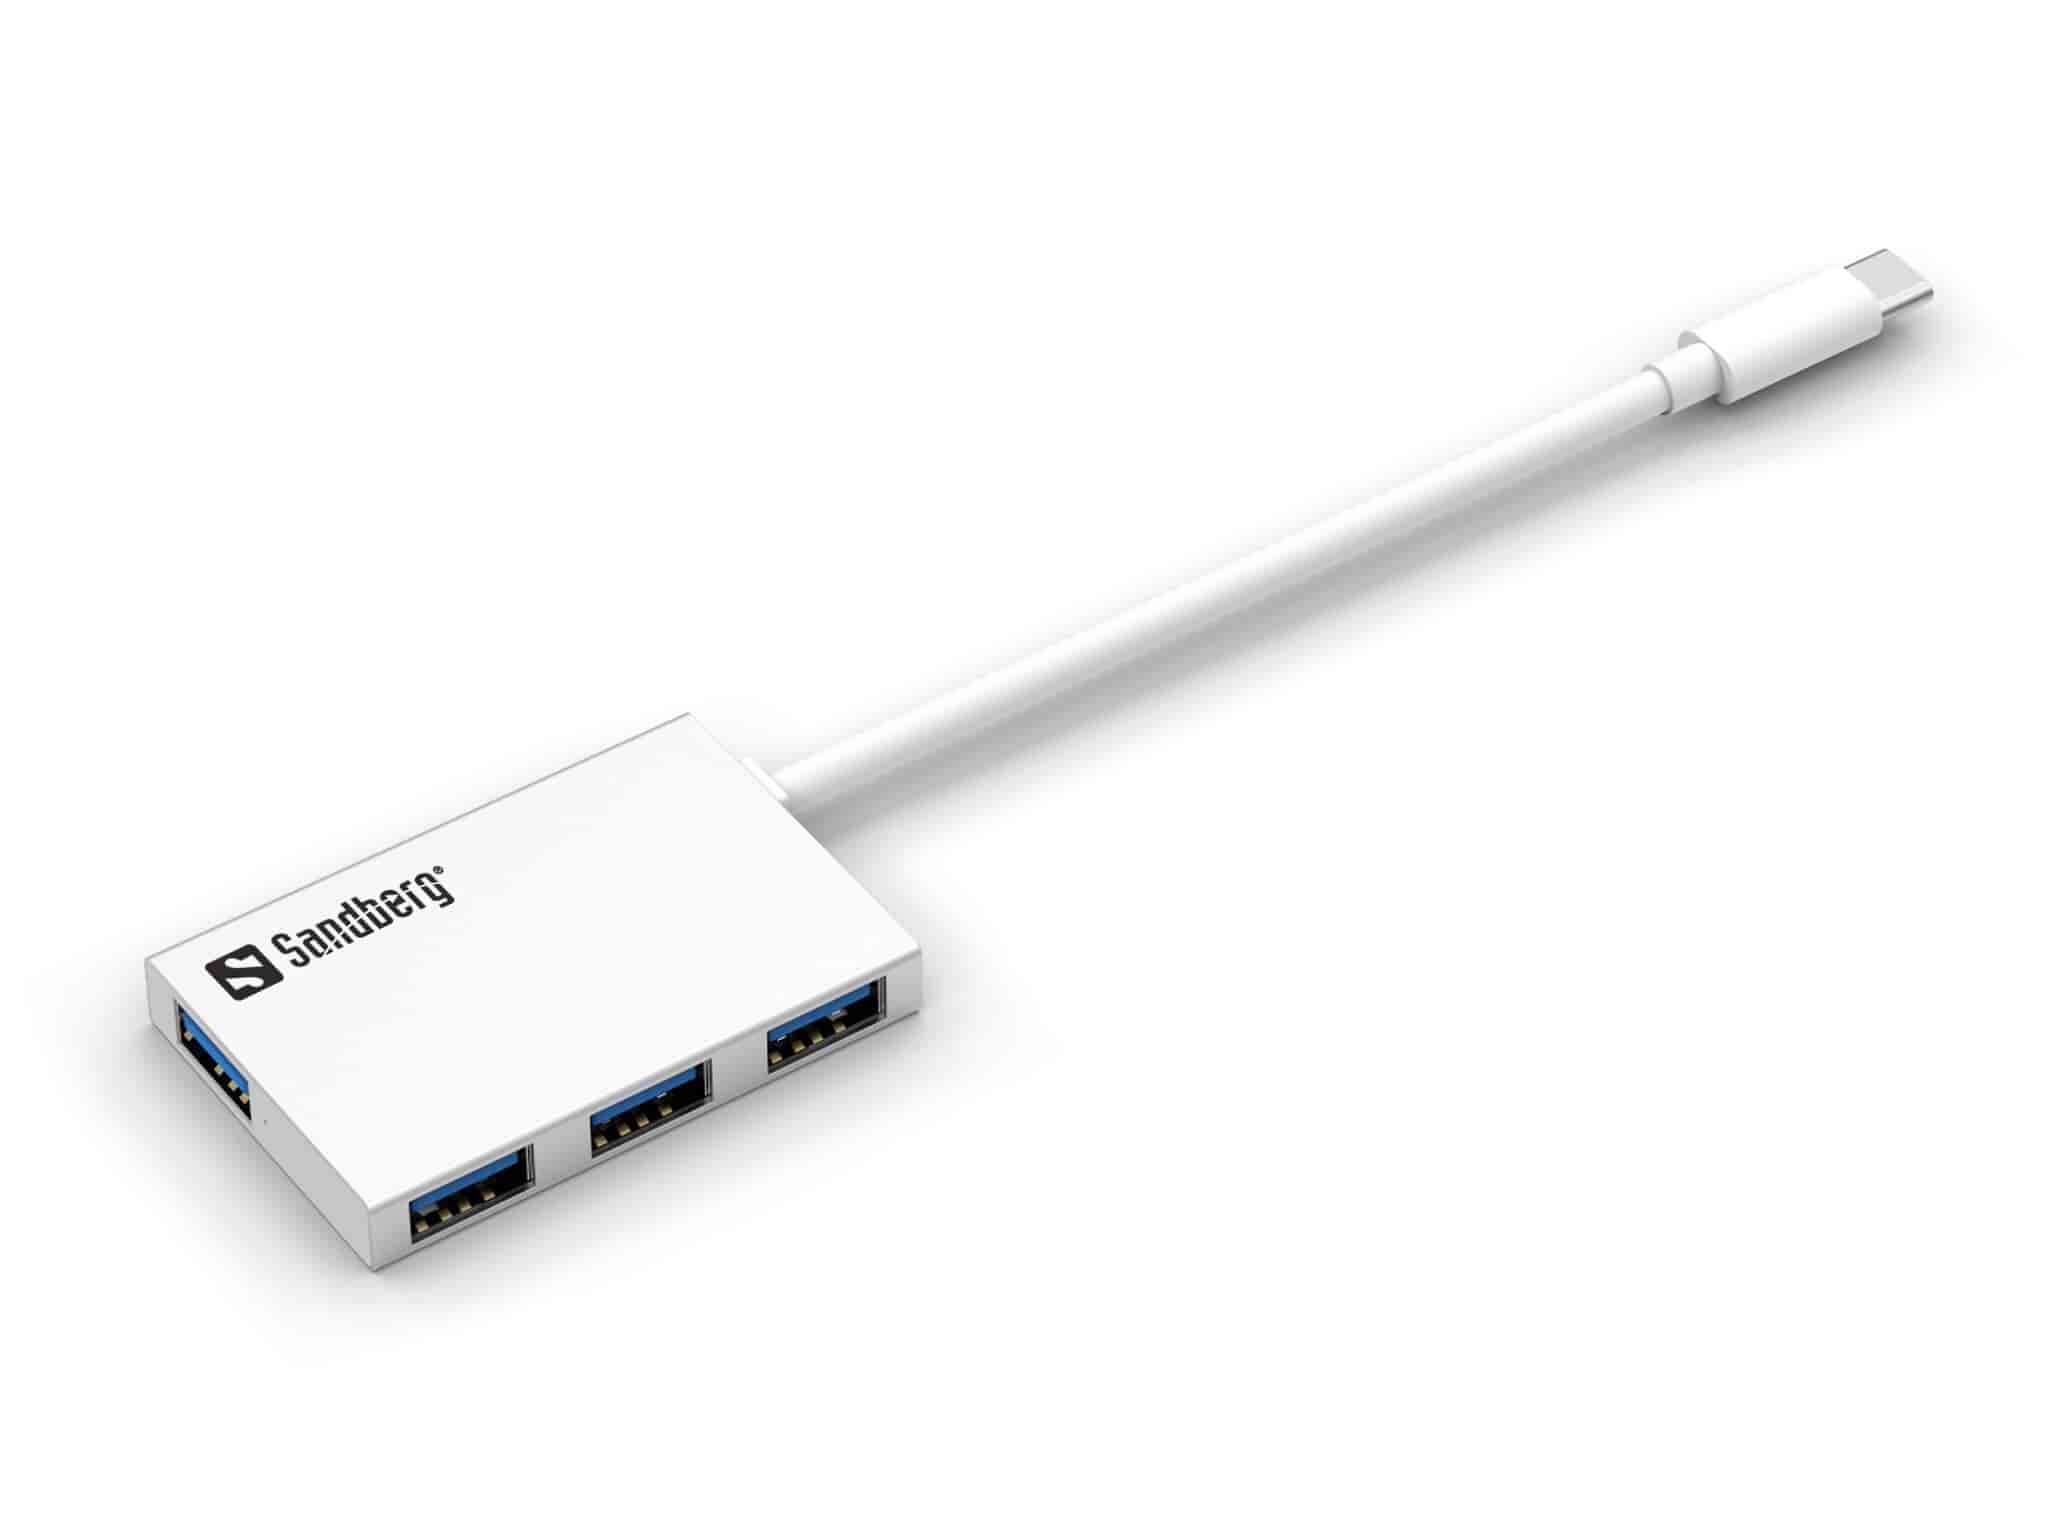 USB-C to 4 x USB 3.0 Pocket Hub, Sandberg